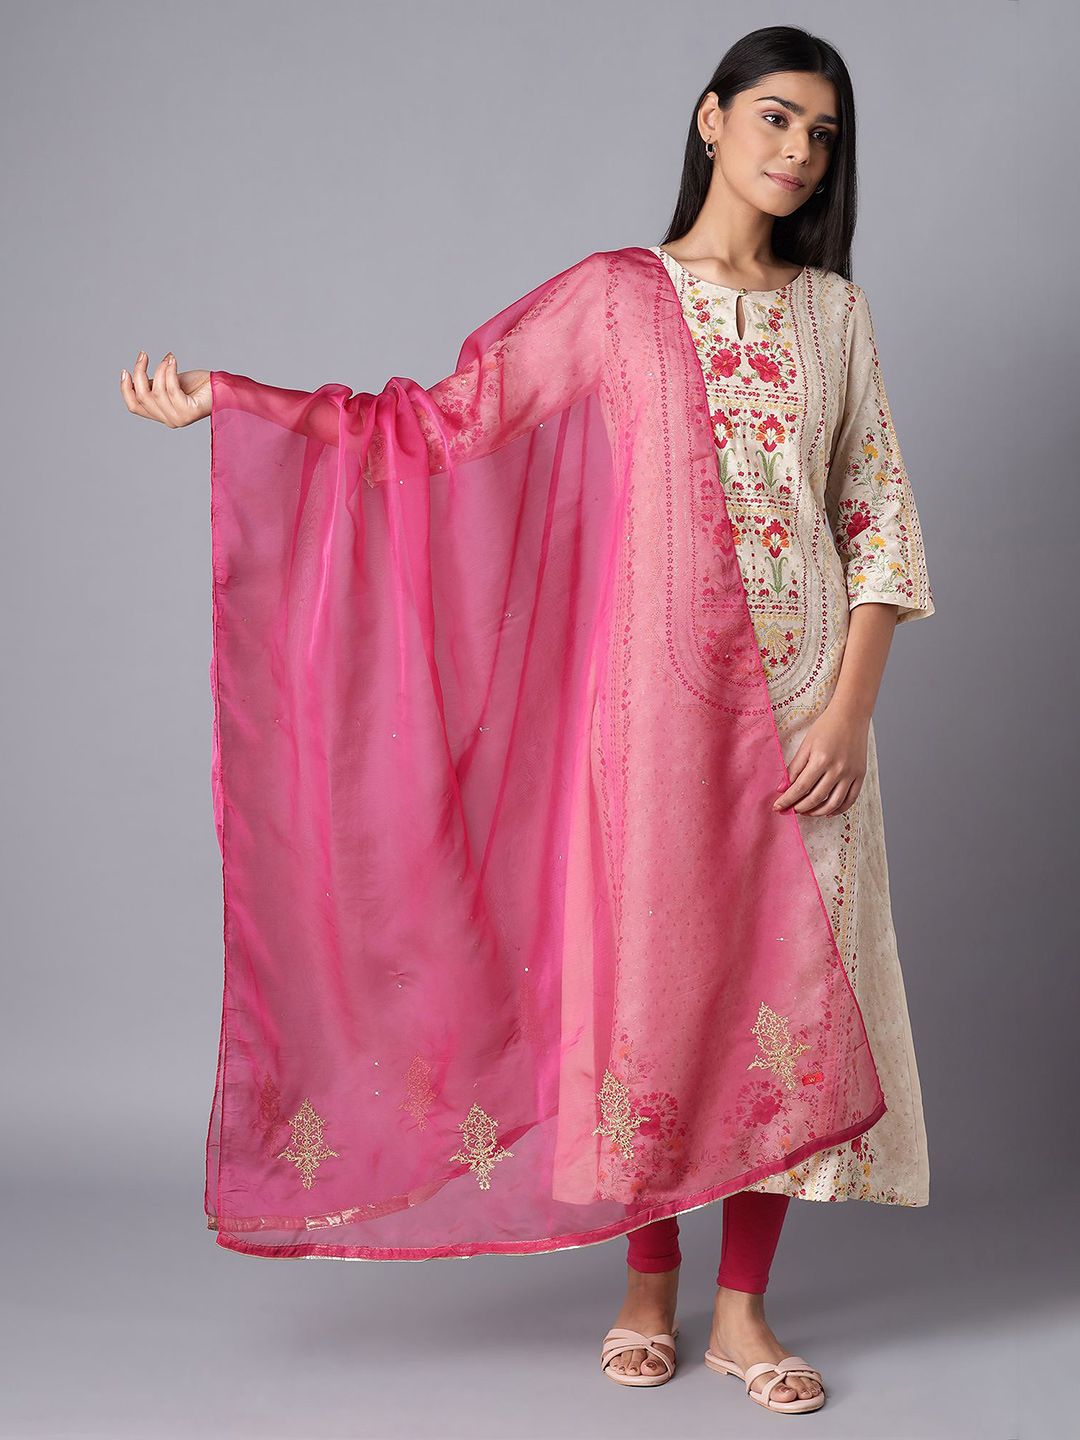 W Women Dark Pink Ethnic Motifs Embroidered Dupatta Price in India